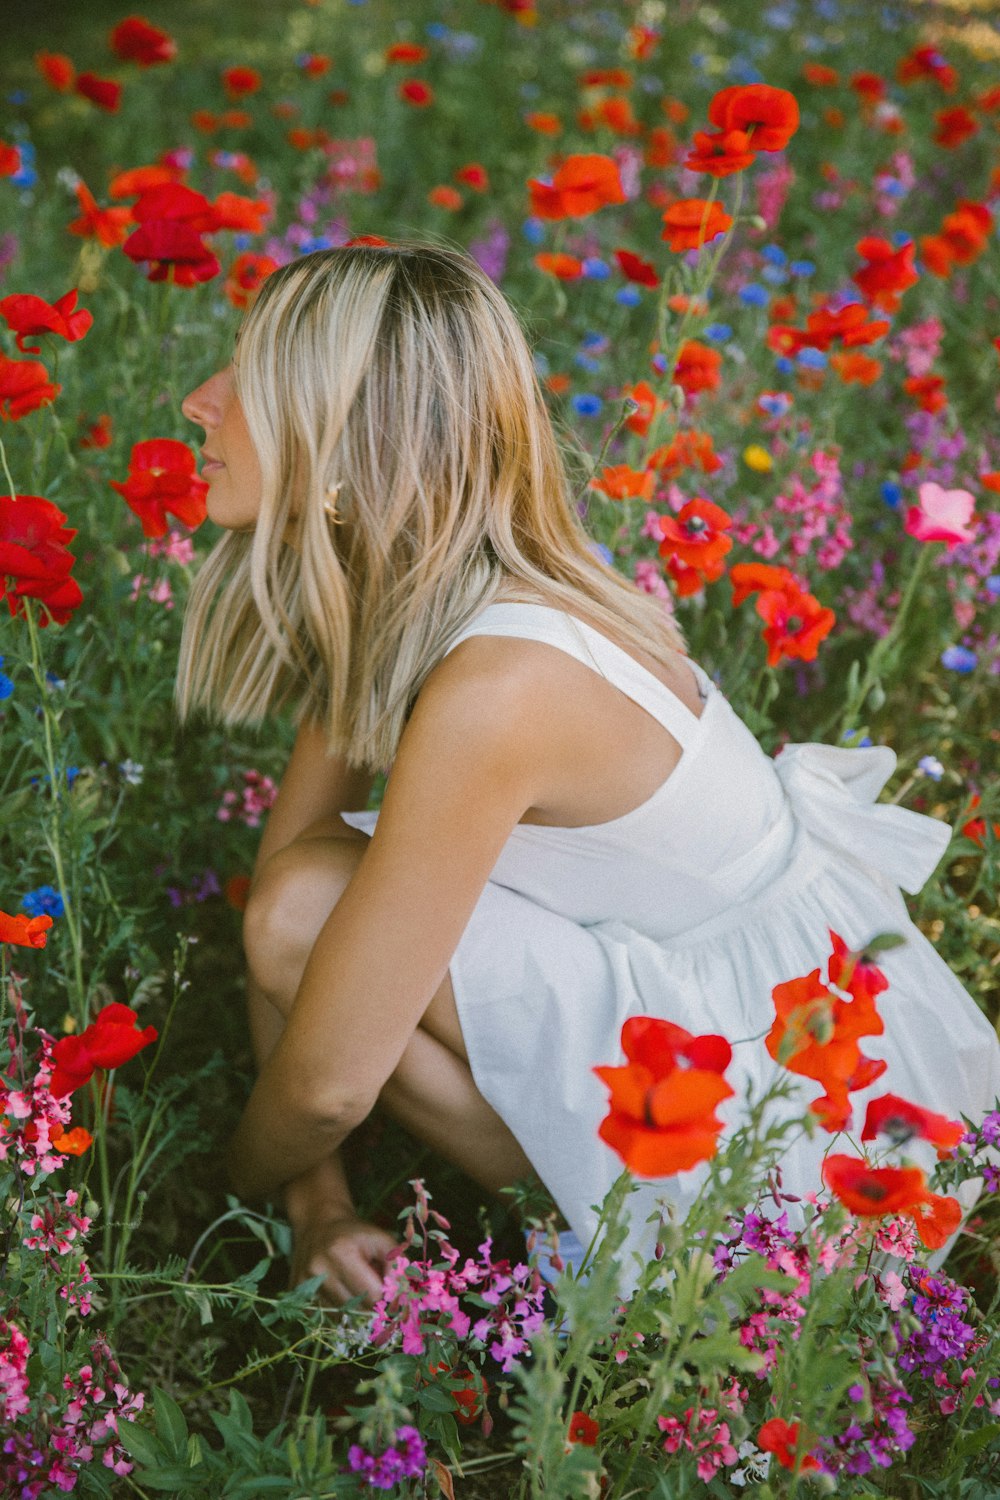 a woman kneeling down in a field of flowers